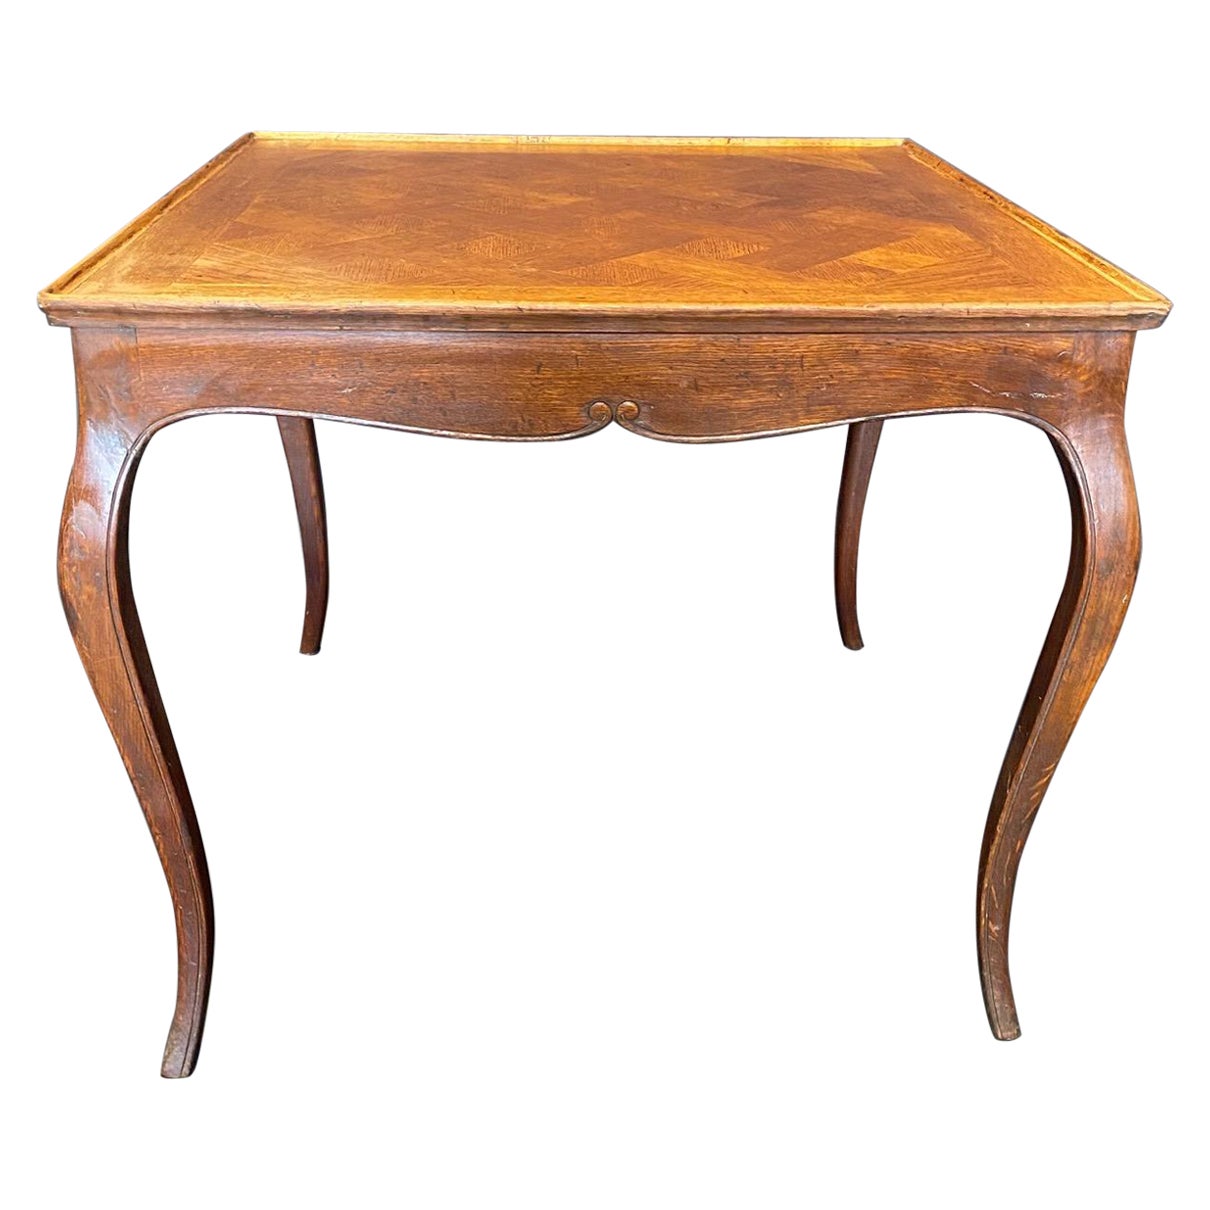 Italian 19th Century Louis XV Oak Side Table with Herringbone Pattern For Sale